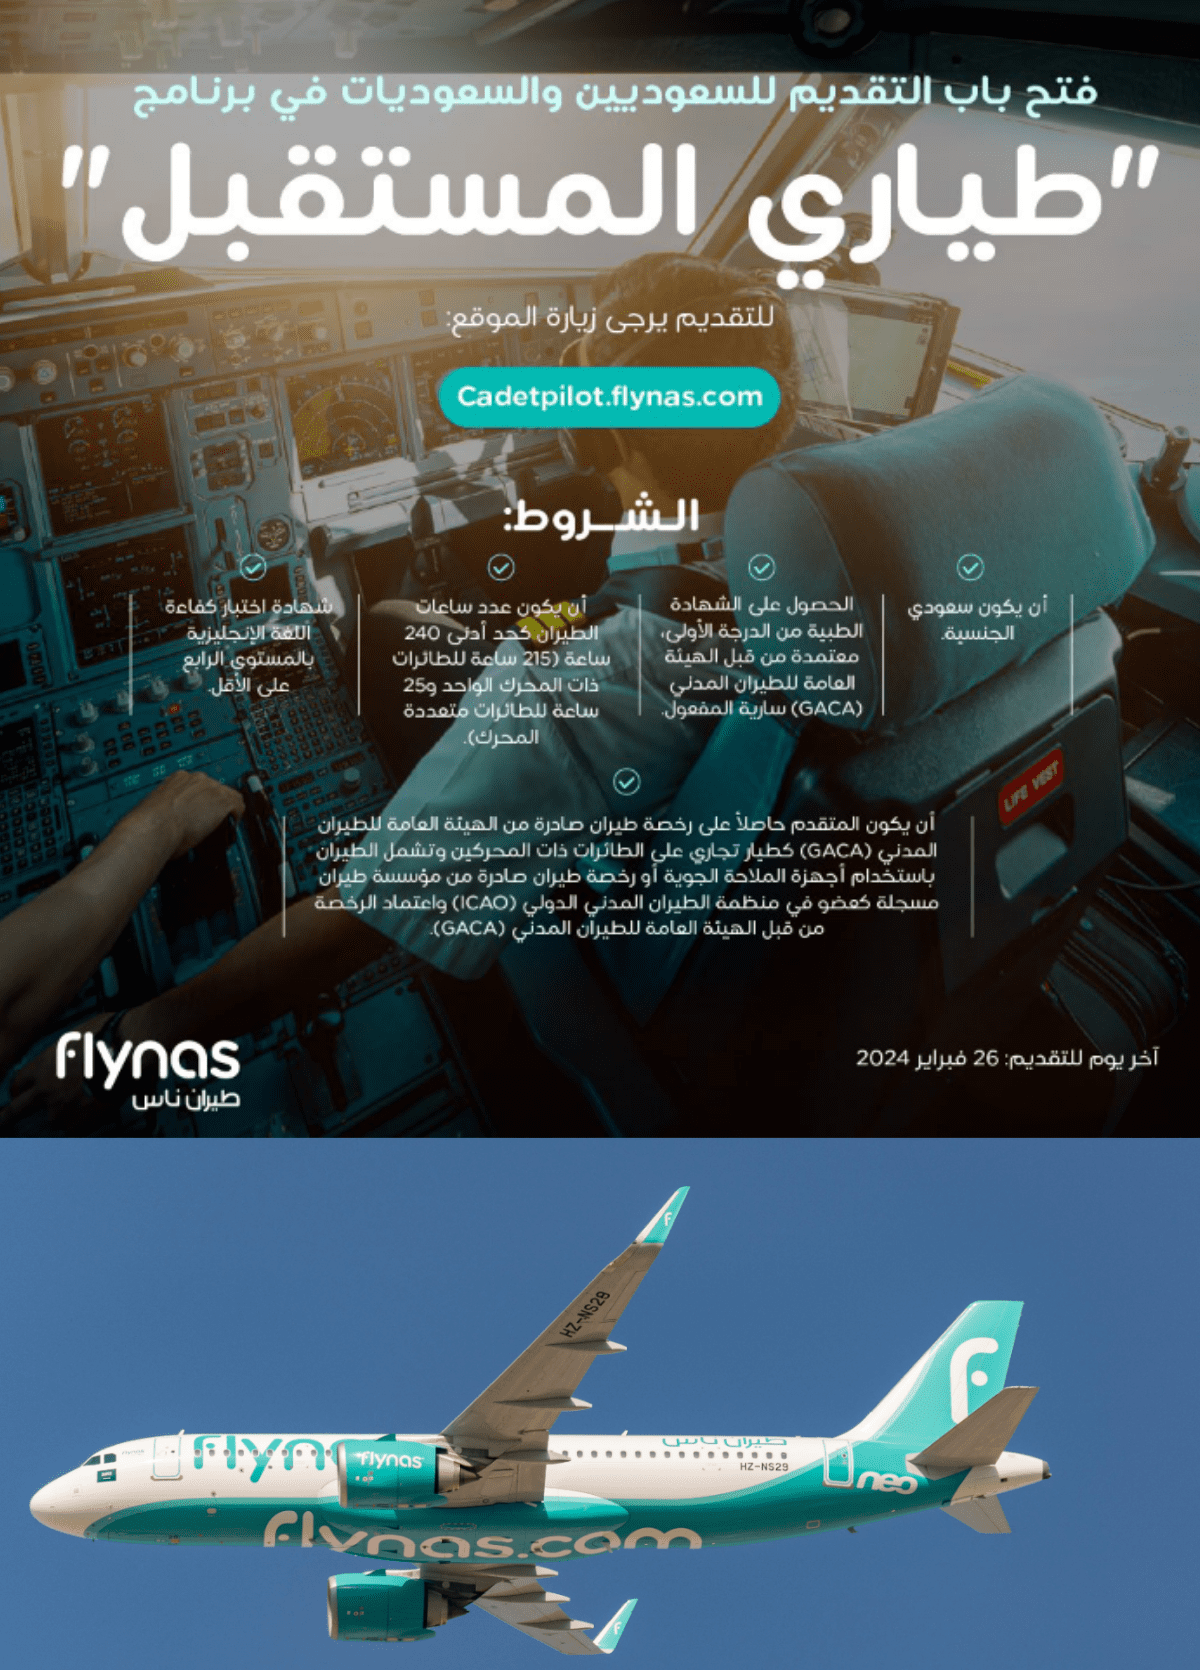 طيران ناس يعلن عن فتح باب القبول في برنامج "طياري المستقبل" للسعوديين والسعوديات لعام 2024م